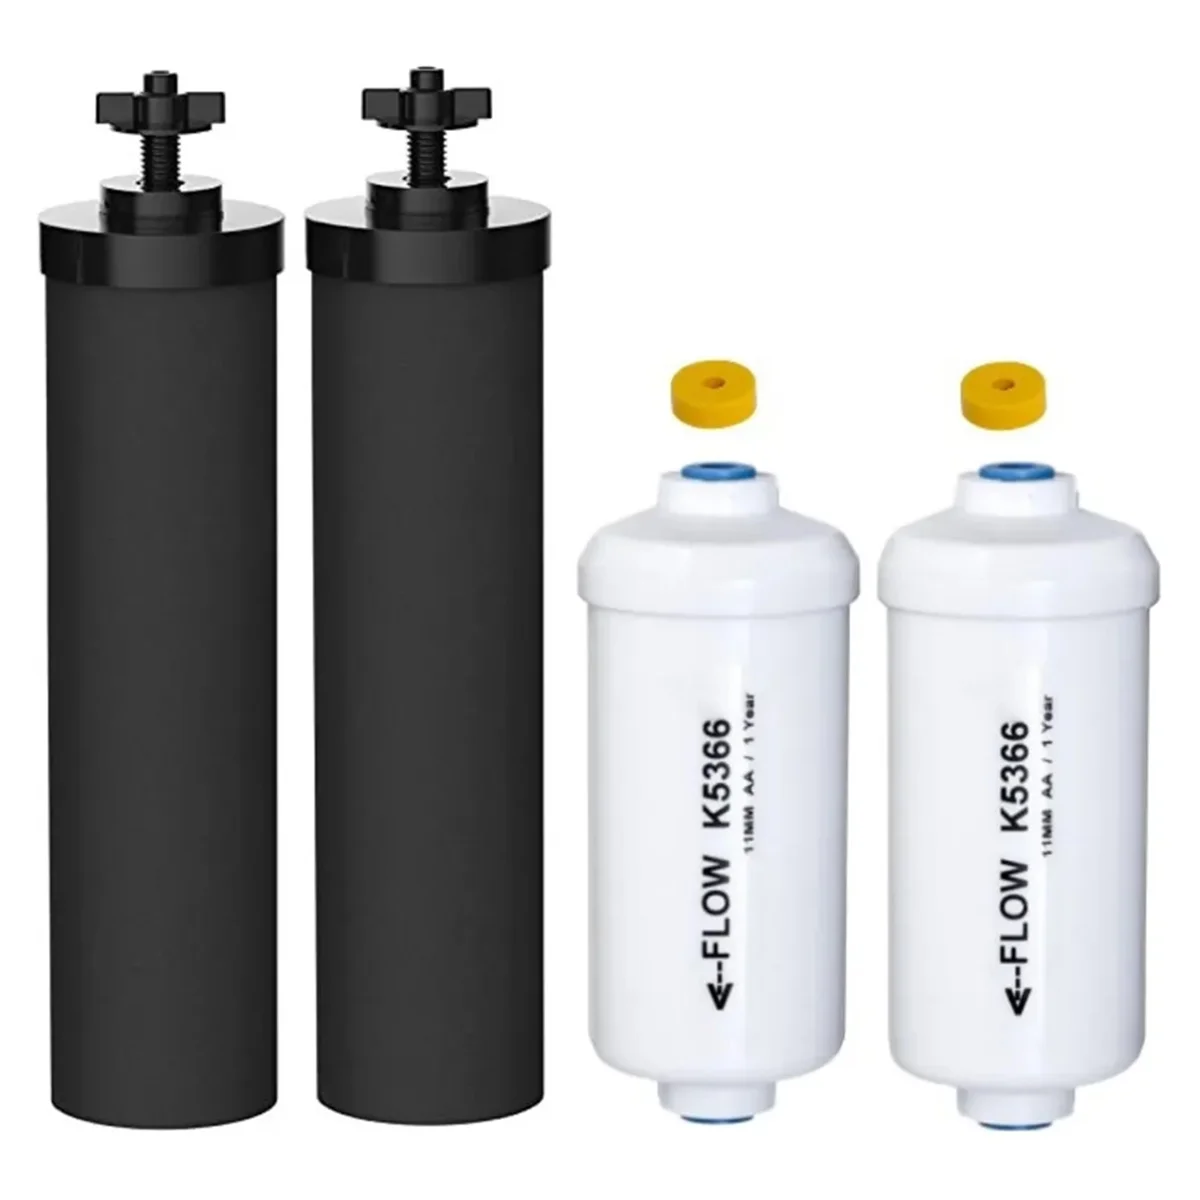 Замена 2 фторидных фильтров для воды BB9-2 и 2 PF-2, совместимых с системой гравитационной фильтрации воды Black Berkey